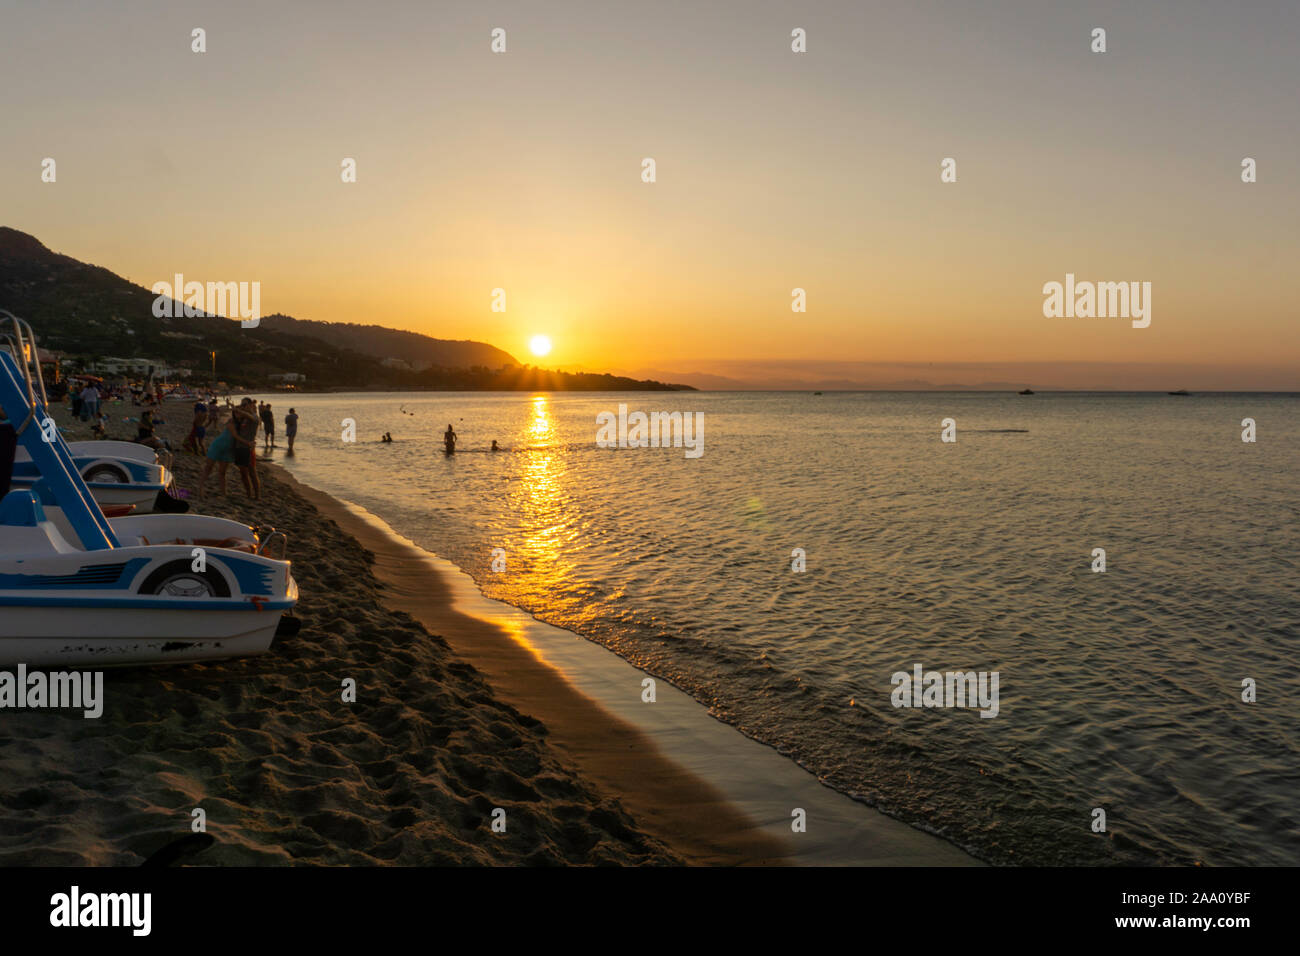 Coucher du soleil à Cefalú, Sicile, des personnes se préparant à quitter la plage comme dusk falls. Banque D'Images